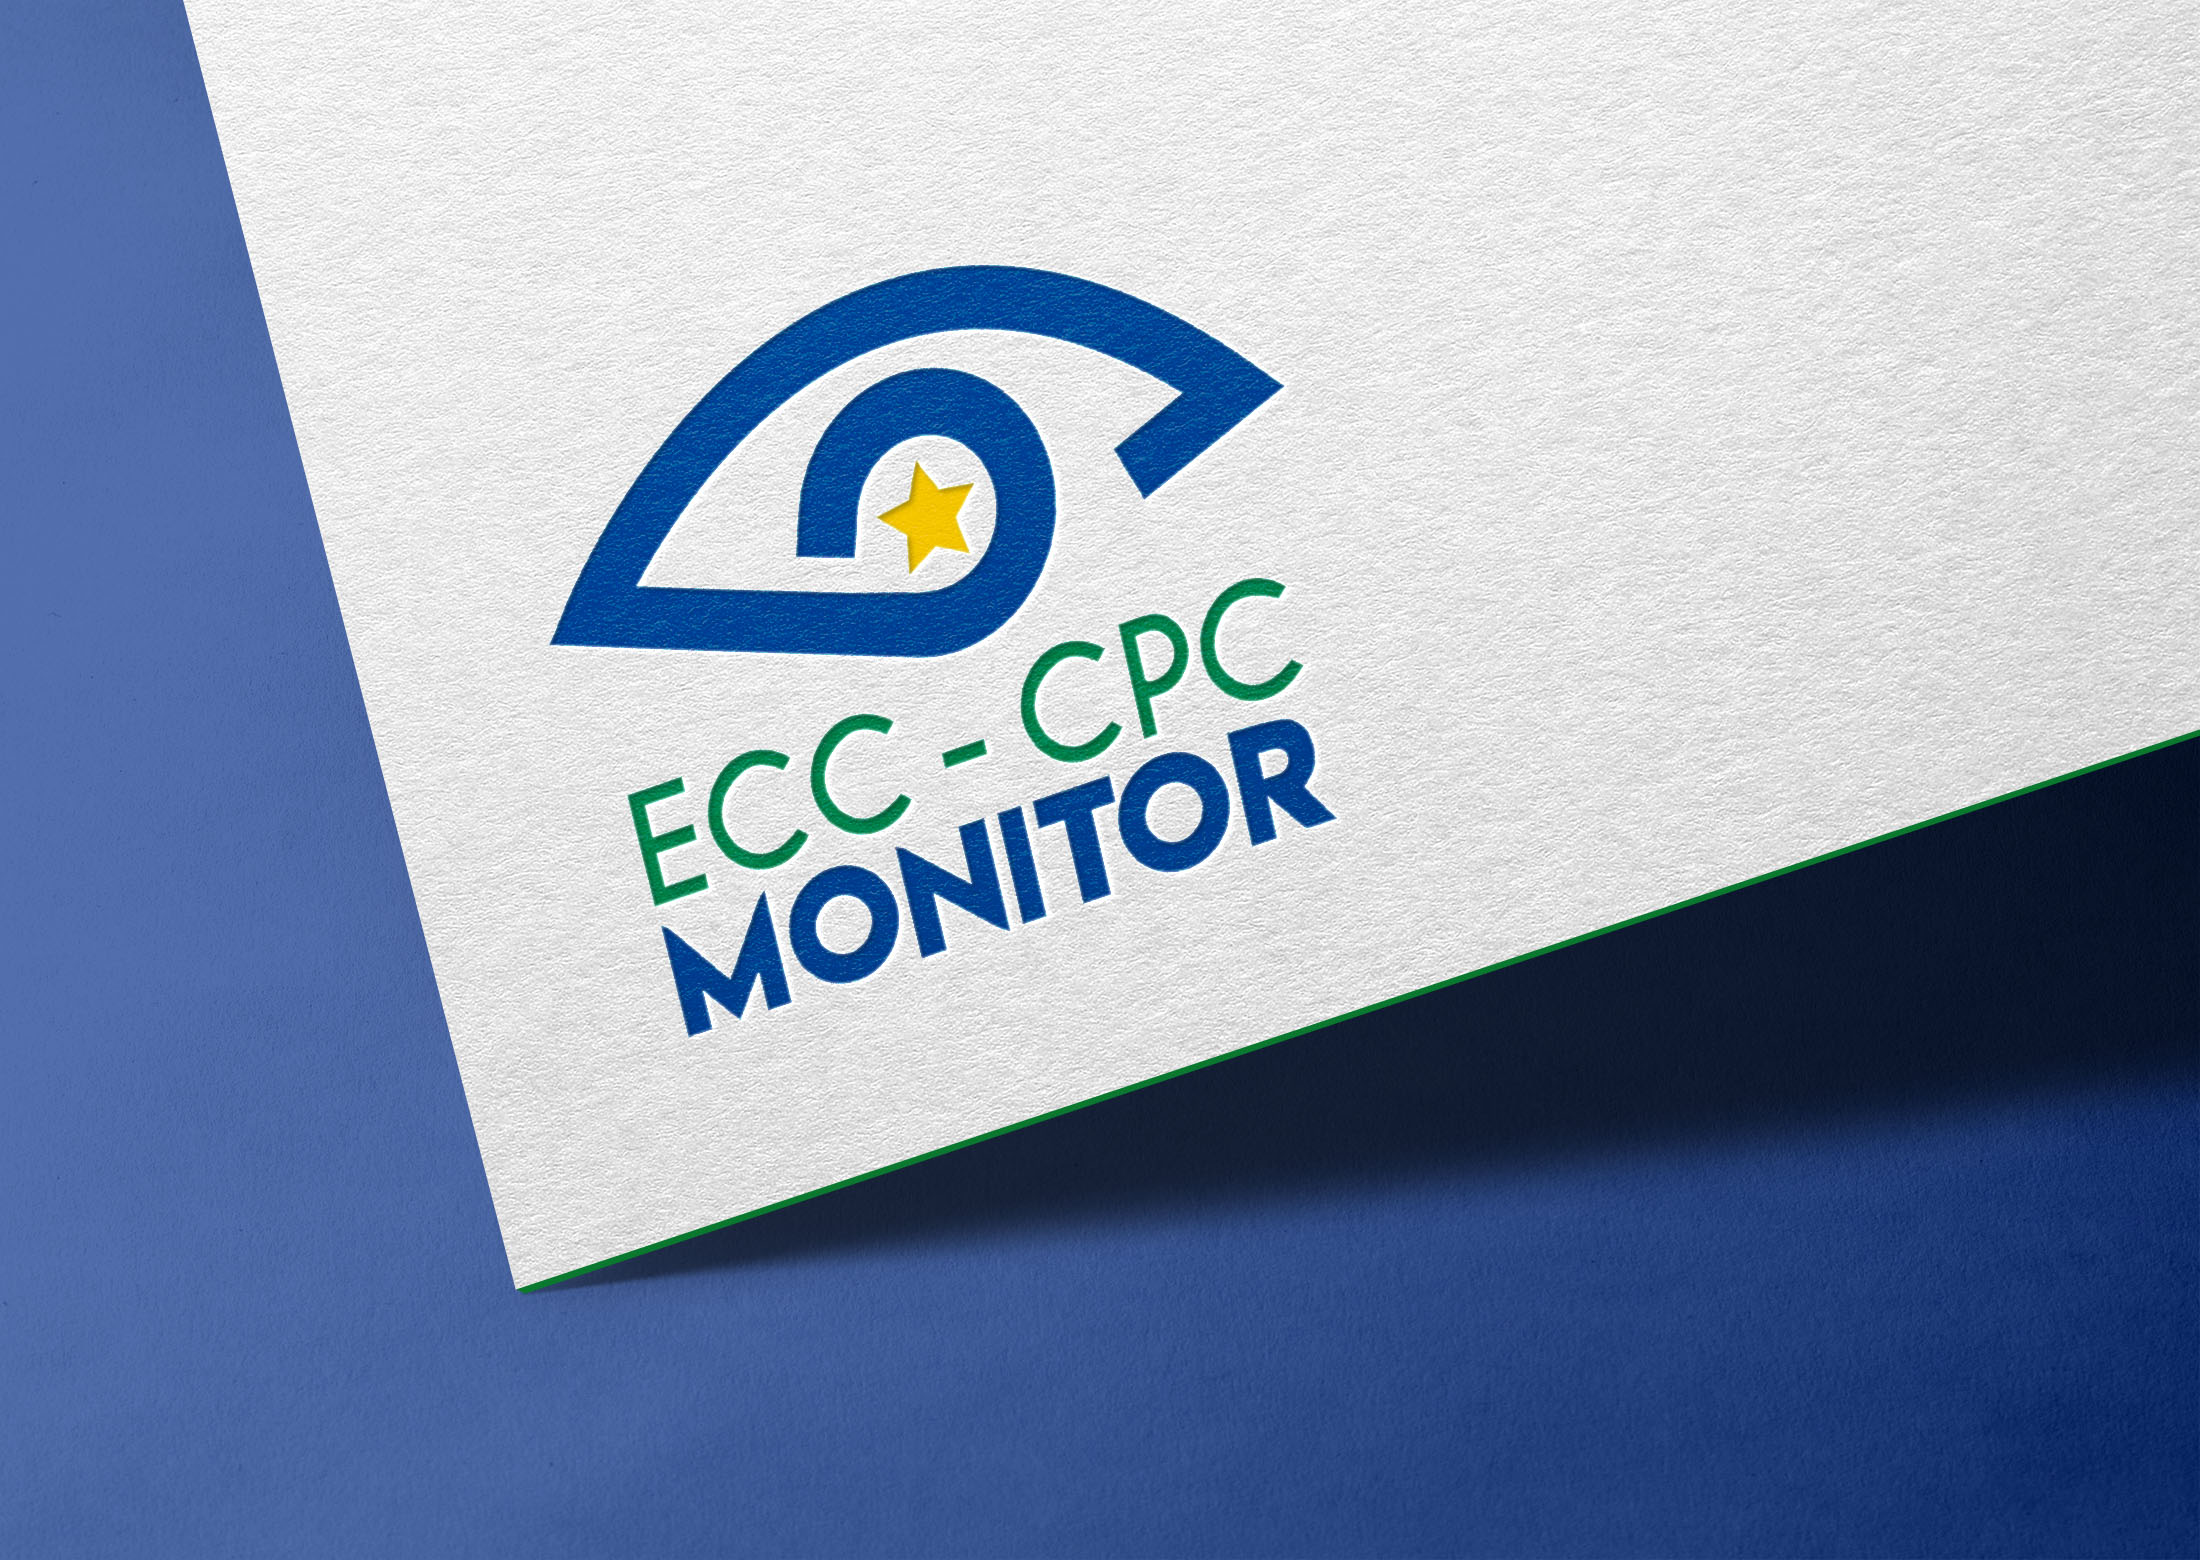 Logo du projet européen "ECC-CPC Monitor" imprimé sur un papier à lettre - Sarah La Selva